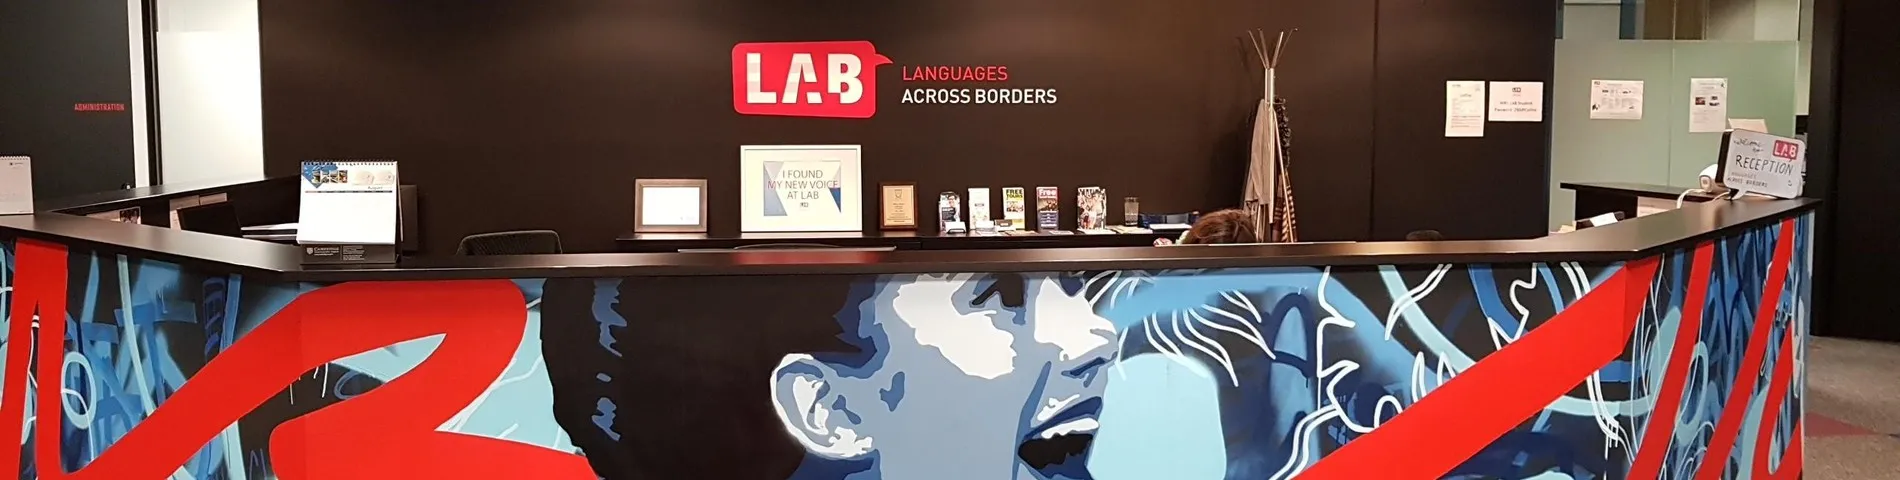 Imatge 1 de l'escola LAB - Languages Across Borders